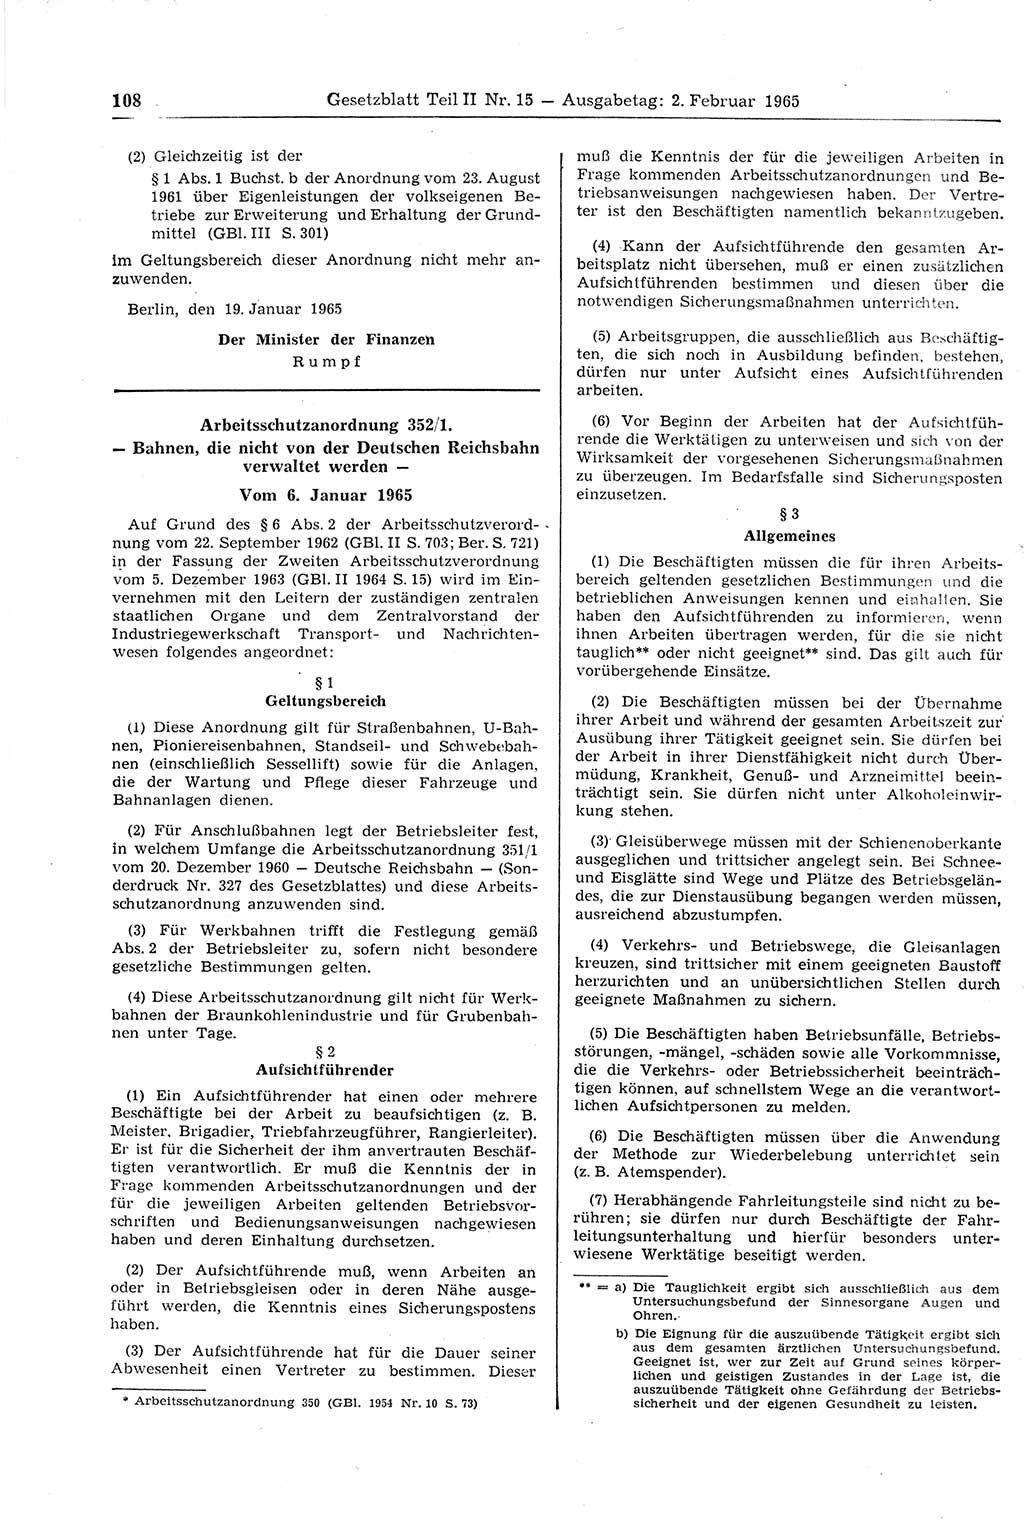 Gesetzblatt (GBl.) der Deutschen Demokratischen Republik (DDR) Teil ⅠⅠ 1965, Seite 108 (GBl. DDR ⅠⅠ 1965, S. 108)